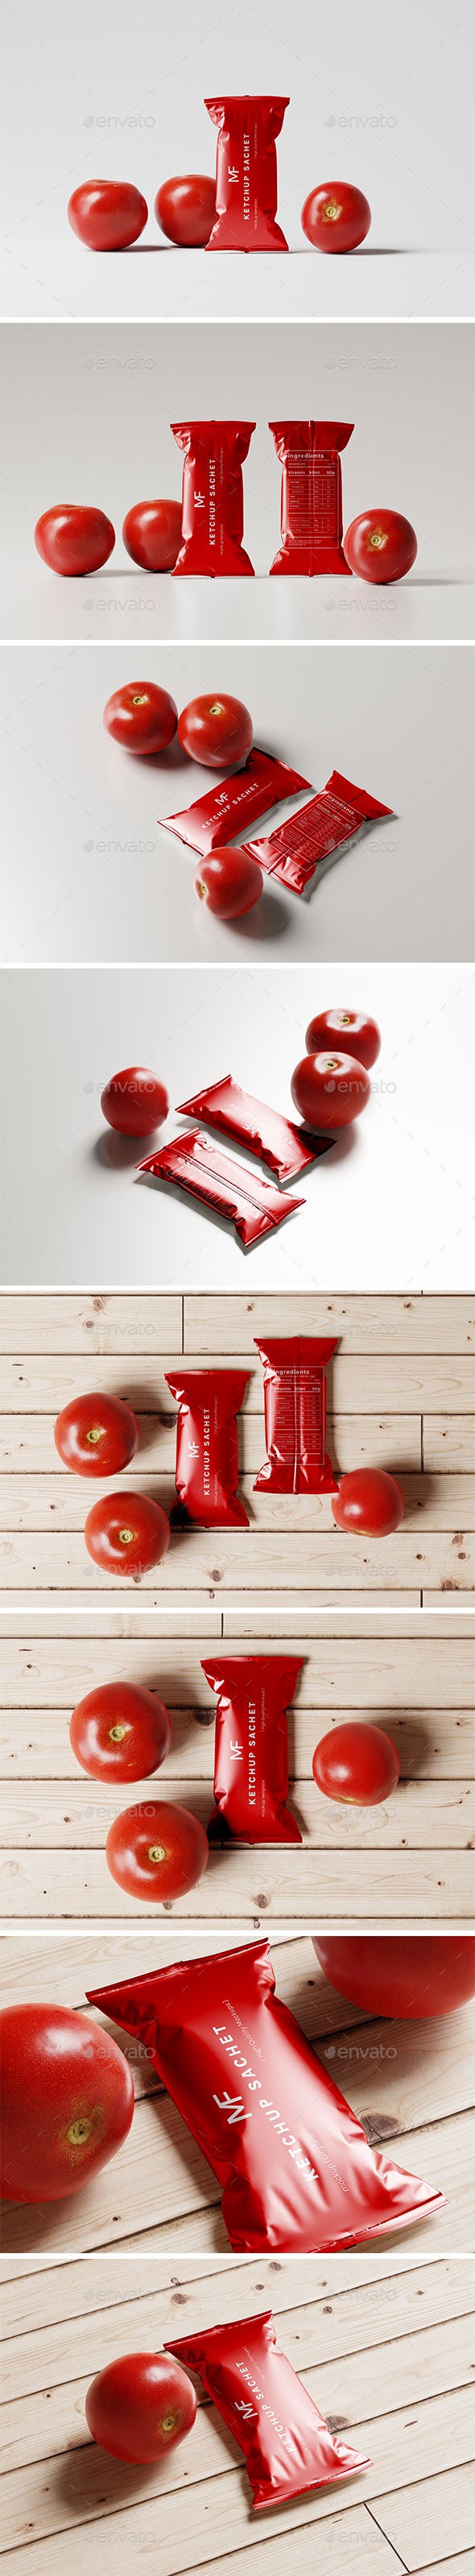 [DOWNLOAD]Tomato Ketchup Sachet Packet Mockups